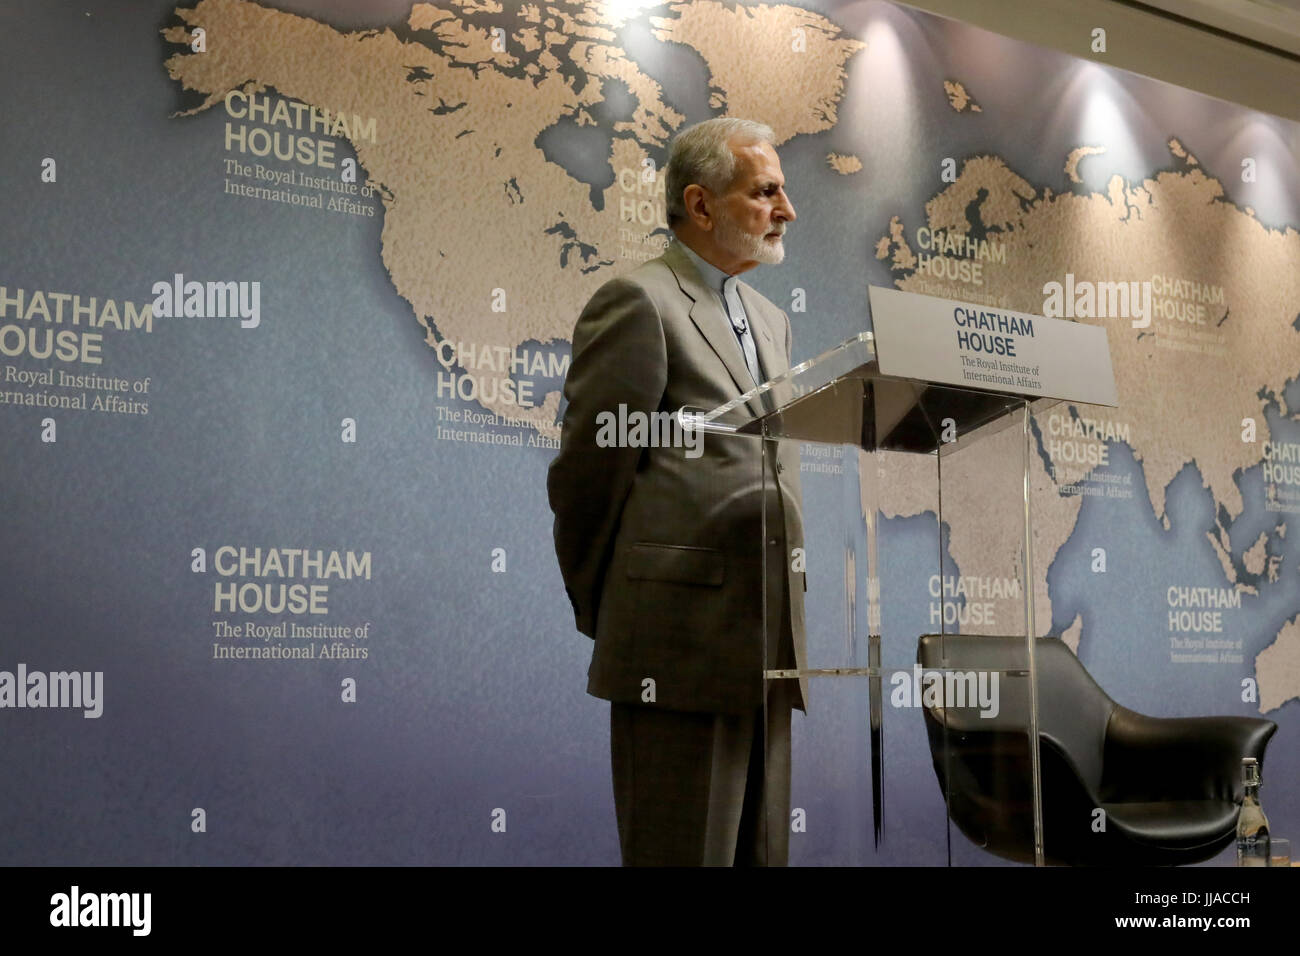 Londres, Reino Unido. 19 Jul, 2017. El Dr. Kamal Kharrazi, ex Ministro de Relaciones Exteriores iraní, hablando en Chatham House, el 19 de julio de 2017. Crédito: Dominic Dudley/Alamy Live News Foto de stock